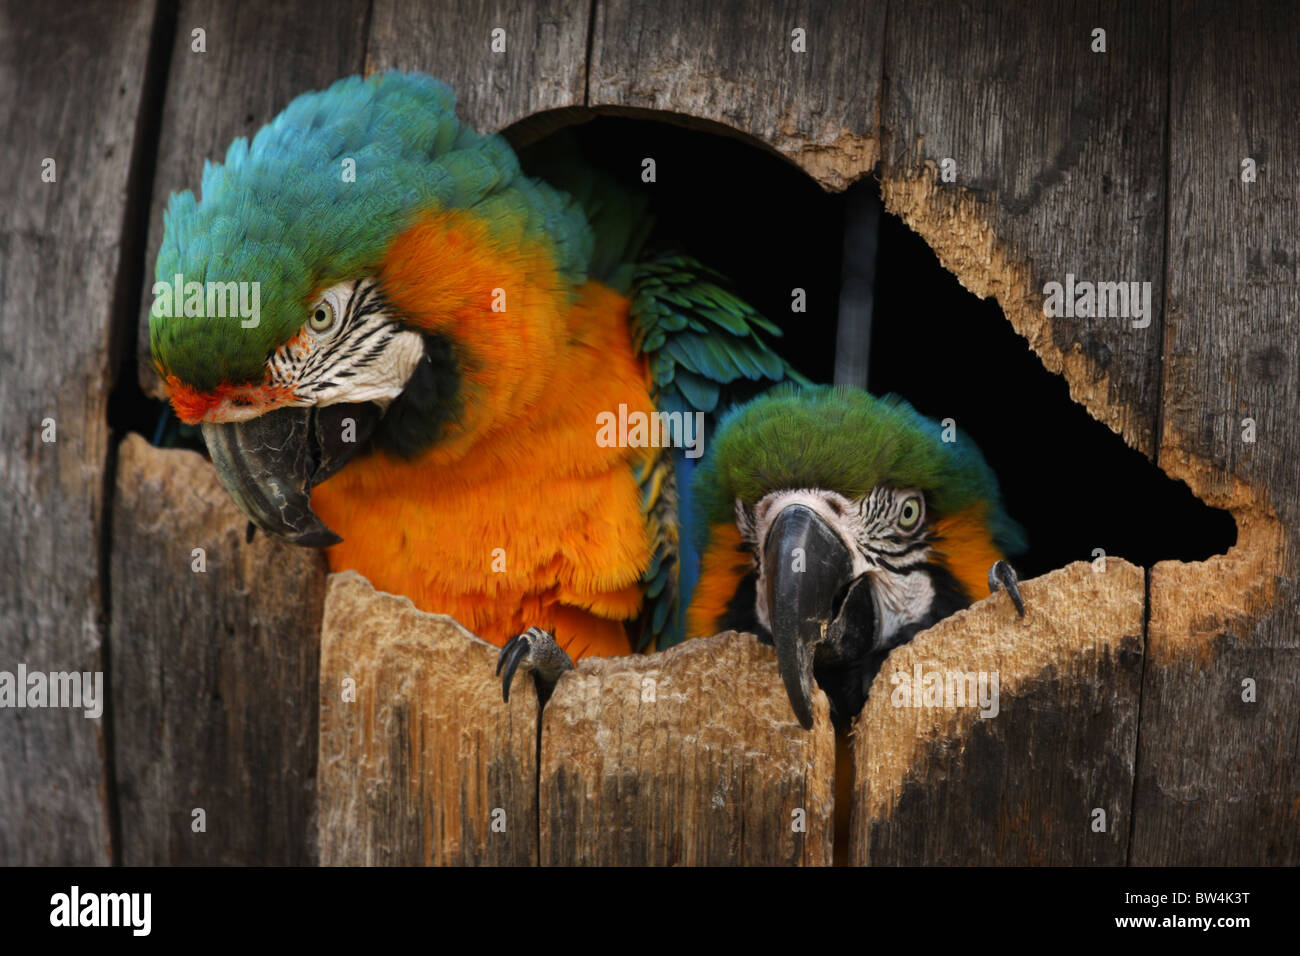 Schuss in den Kopf von zwei Ara Papageien in ihrem Nistkasten Fass hautnah  Stockfotografie - Alamy